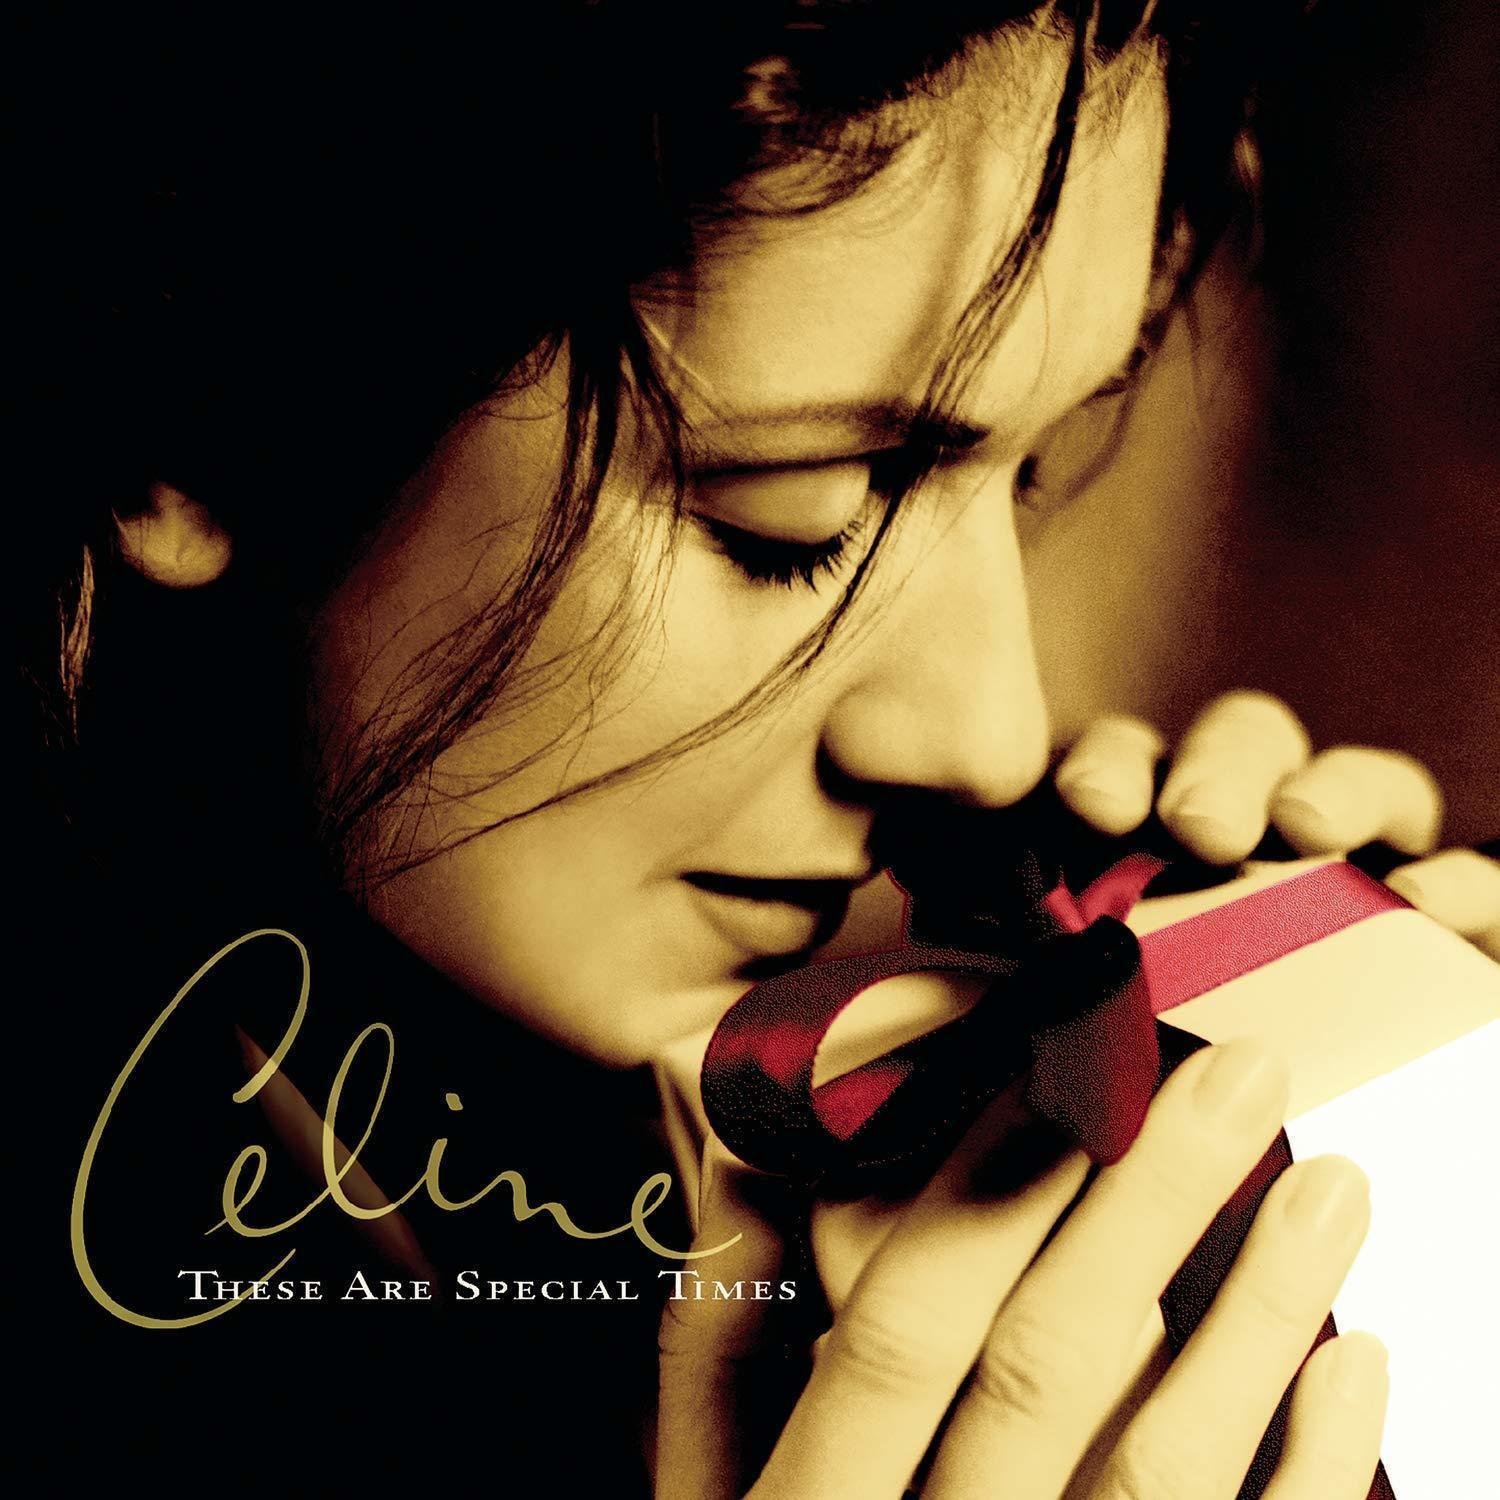 Disco de vinil Celine Dion These Are Special Times (2 LP)